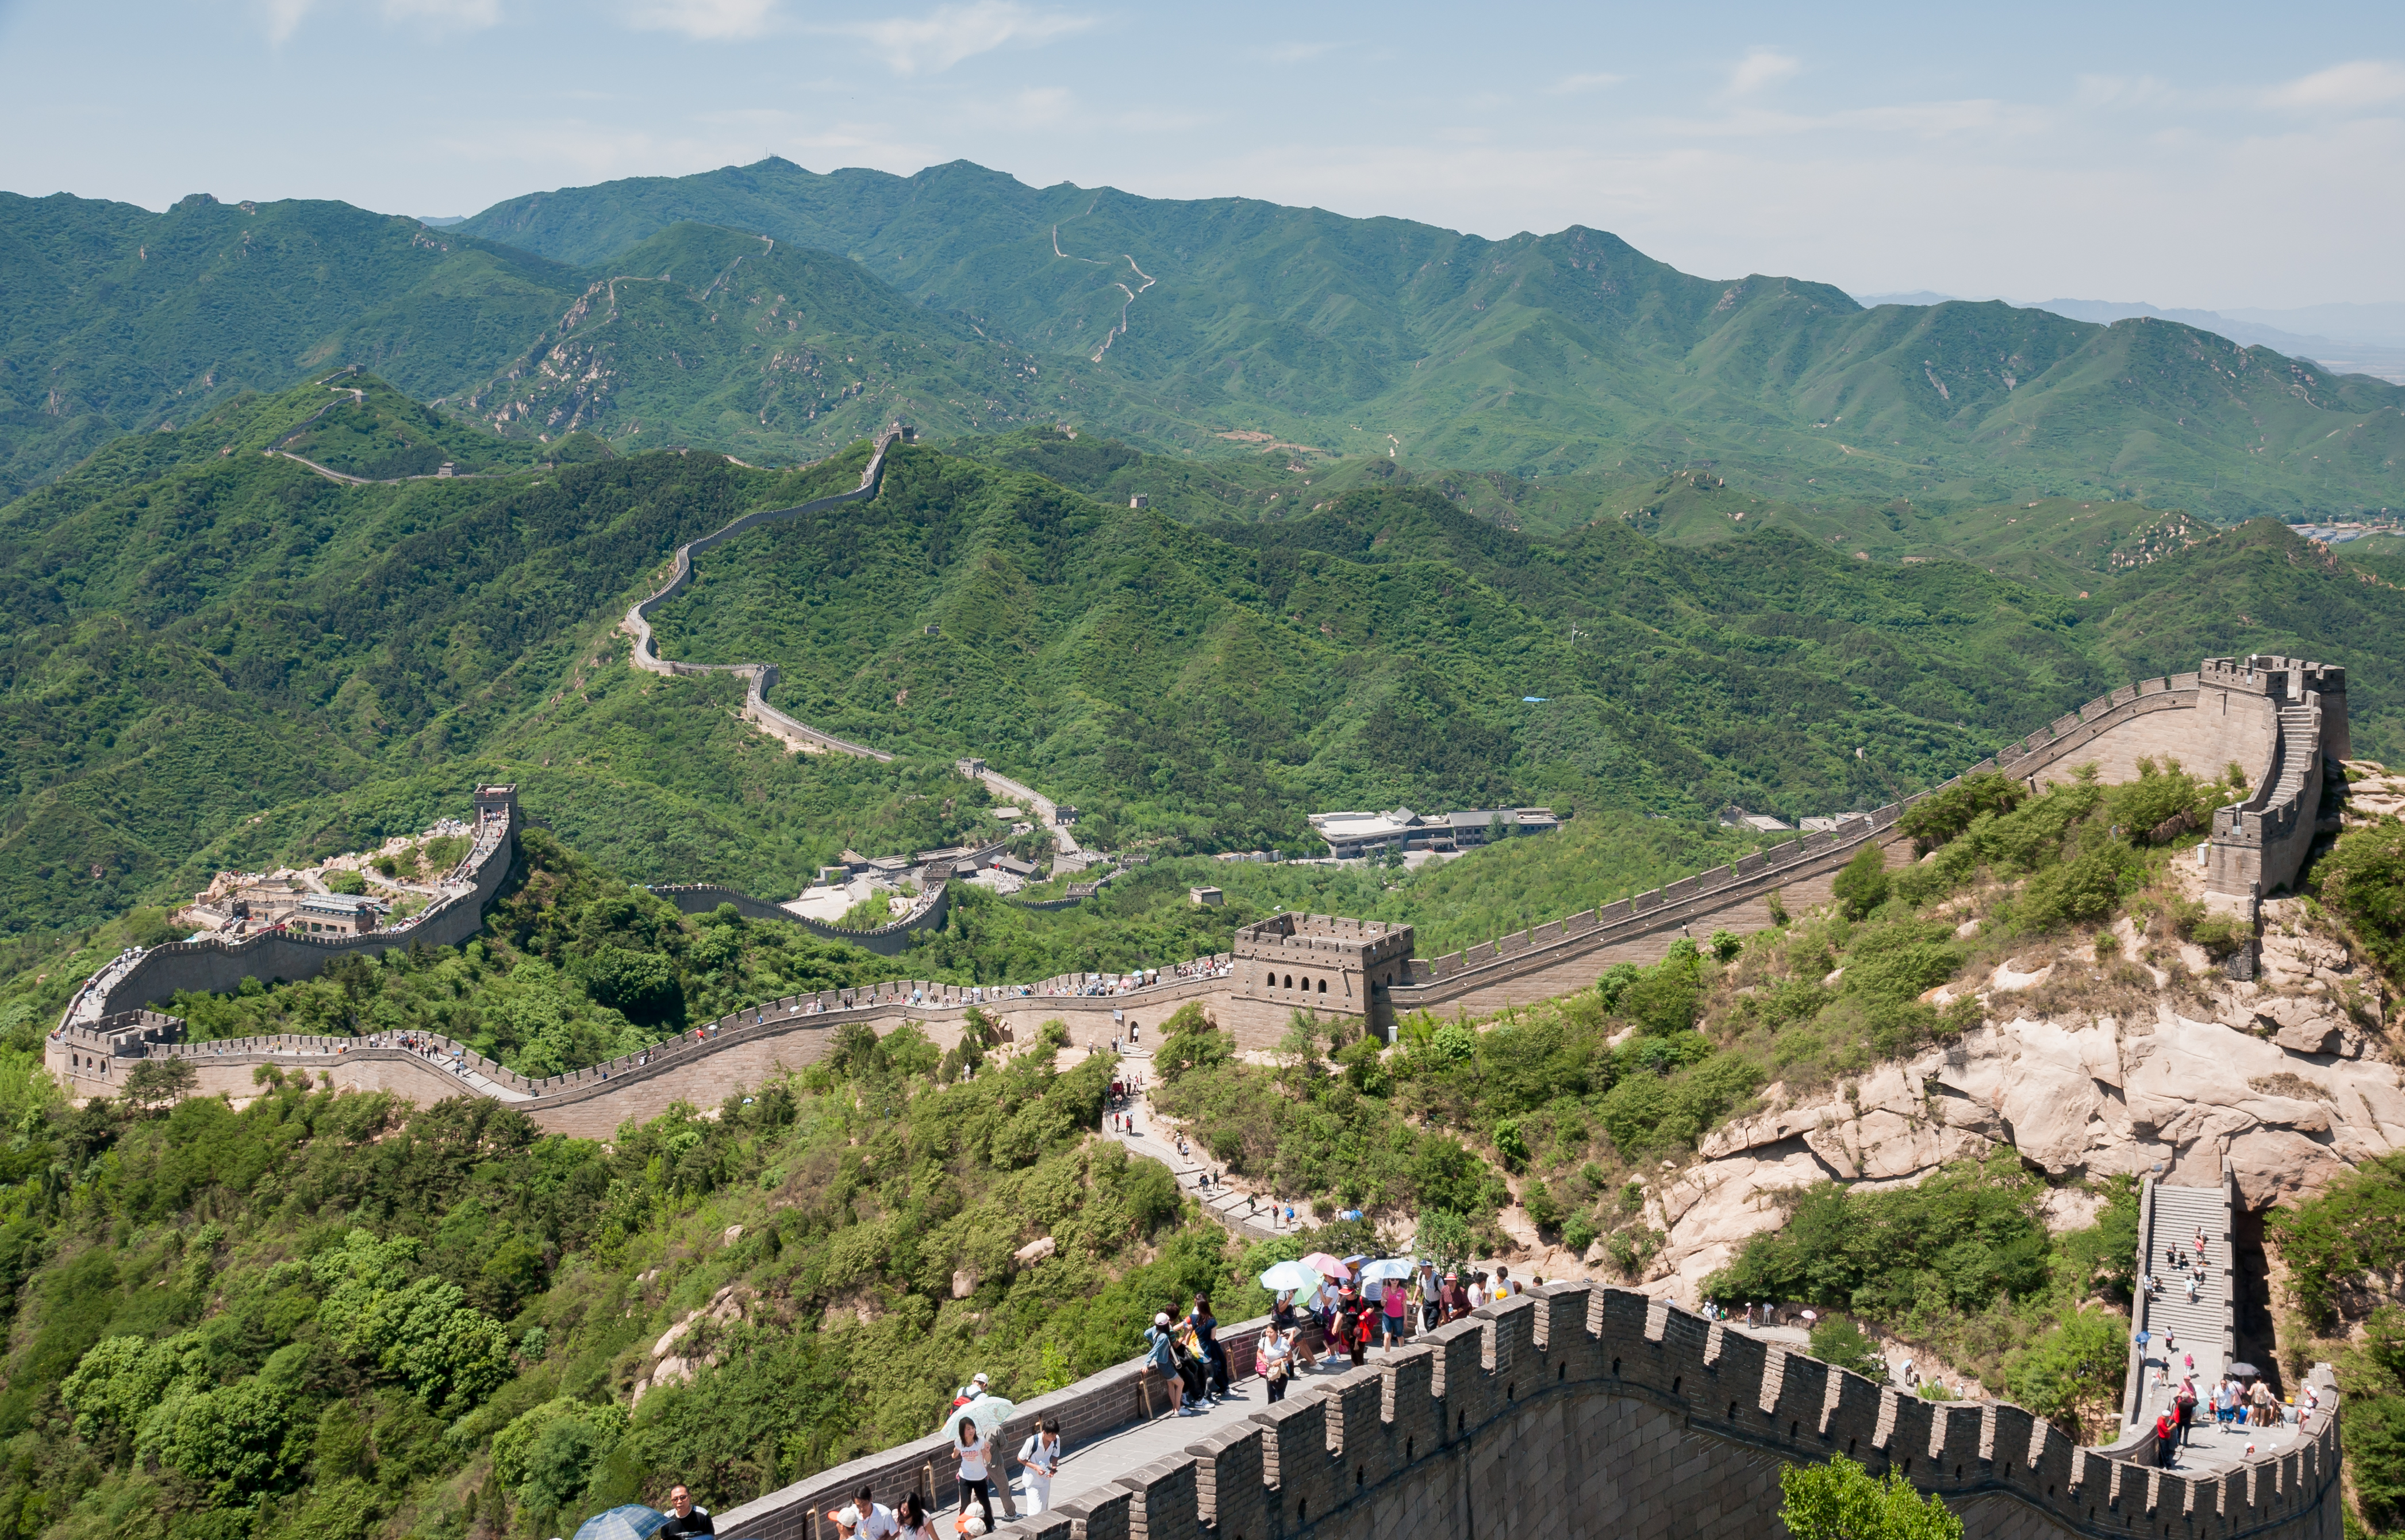 Badaling China Great-Wall-of-China-01